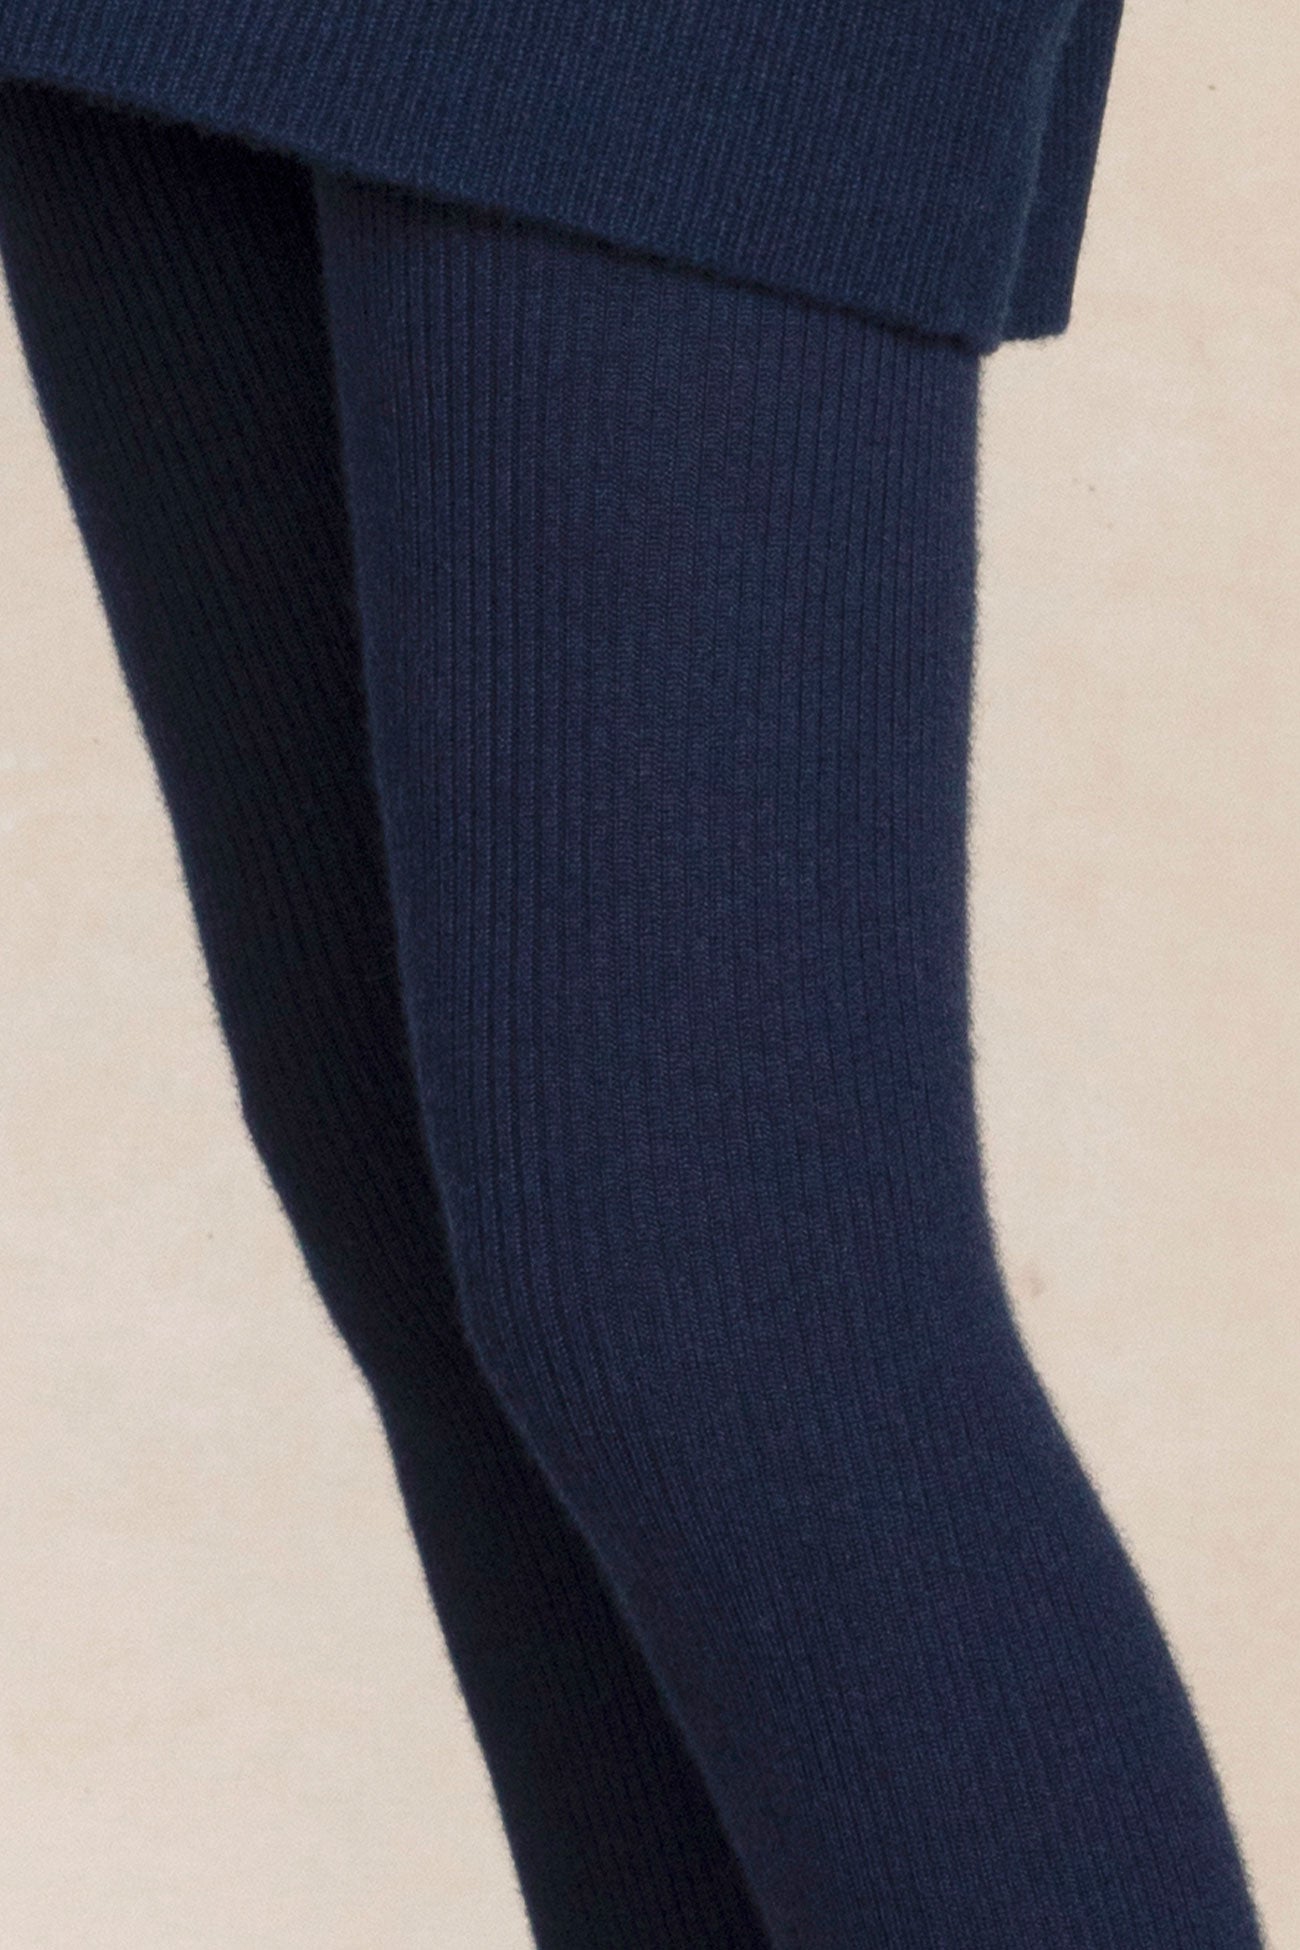 TOG24 ROWAN - Leggings - Trousers - ink navy leaf print/blue